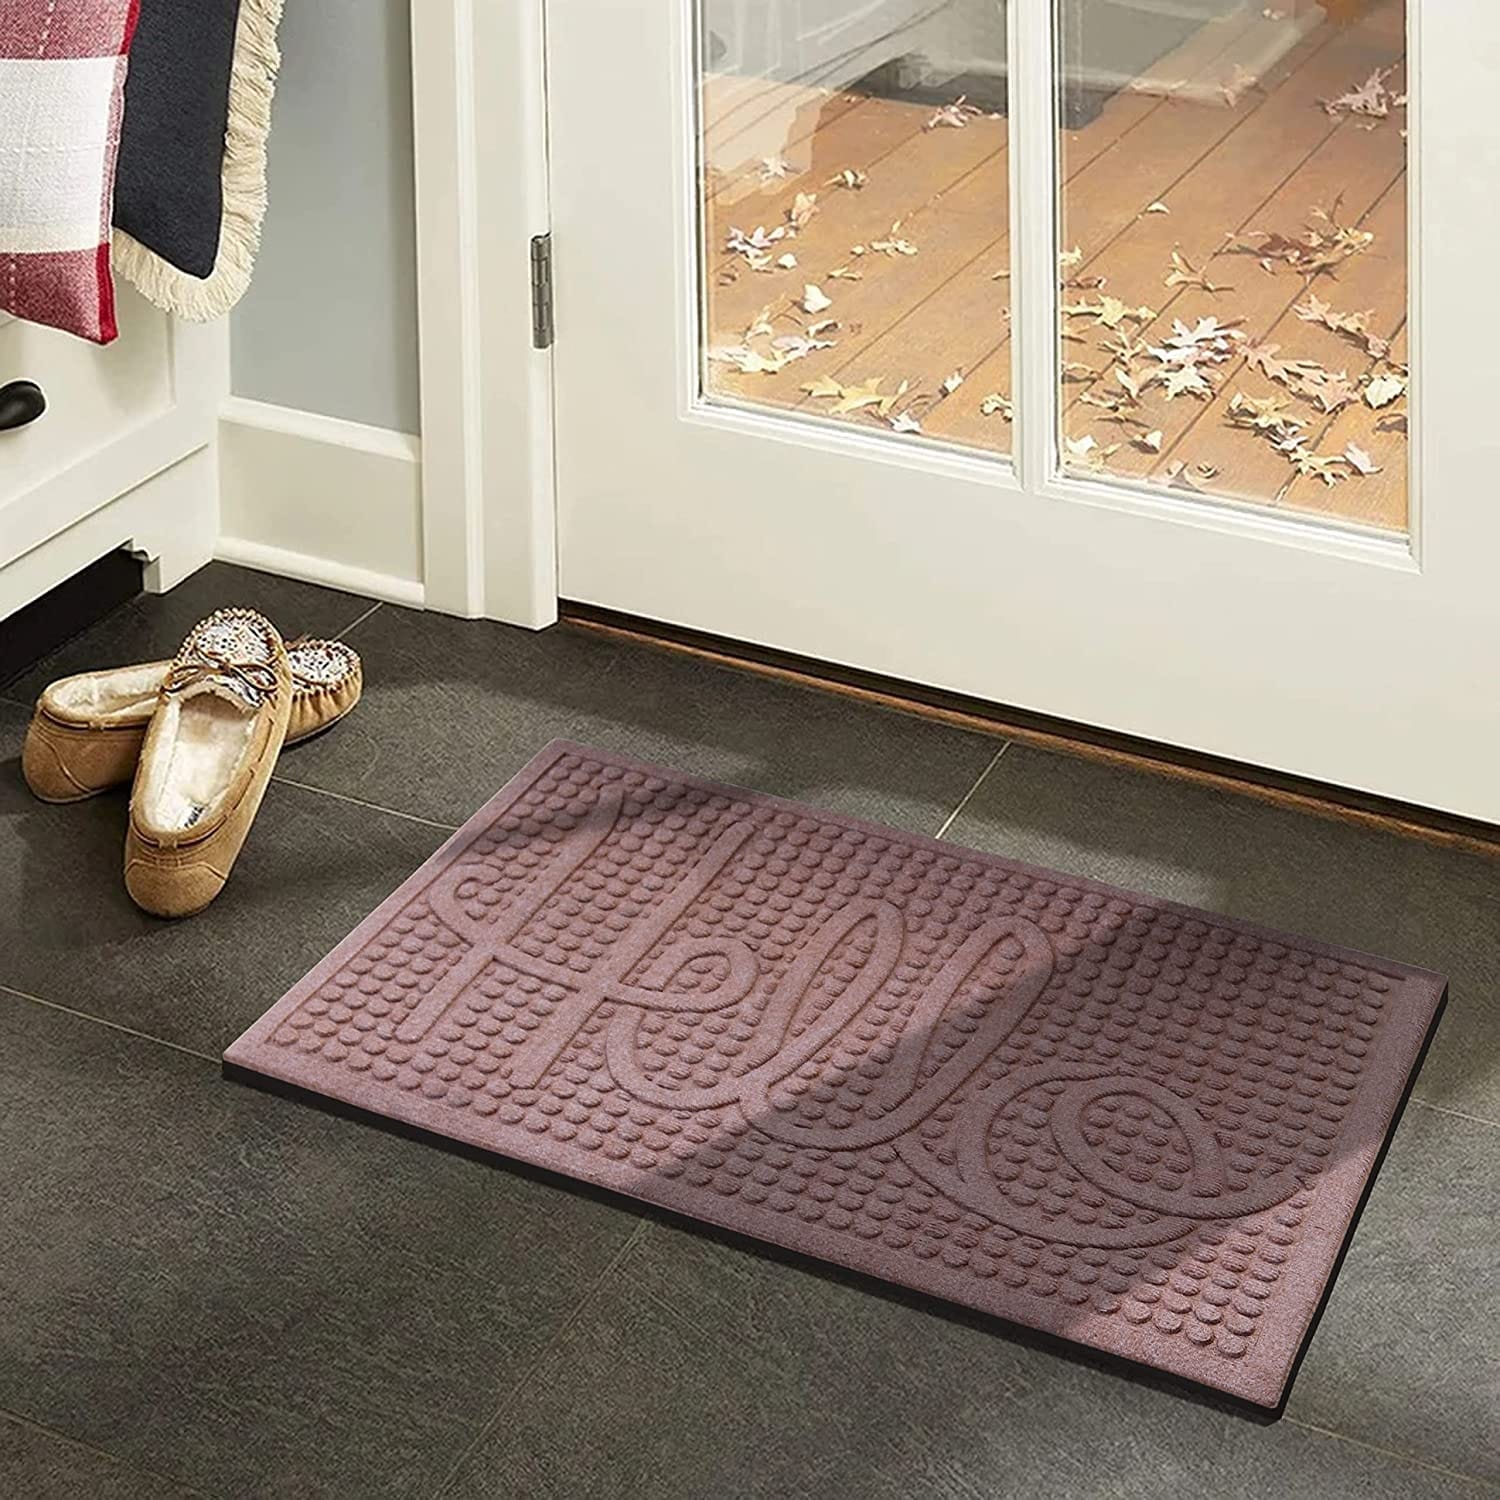 A1HC Modern Indoor/Outdoor Rubber Grill Doormat